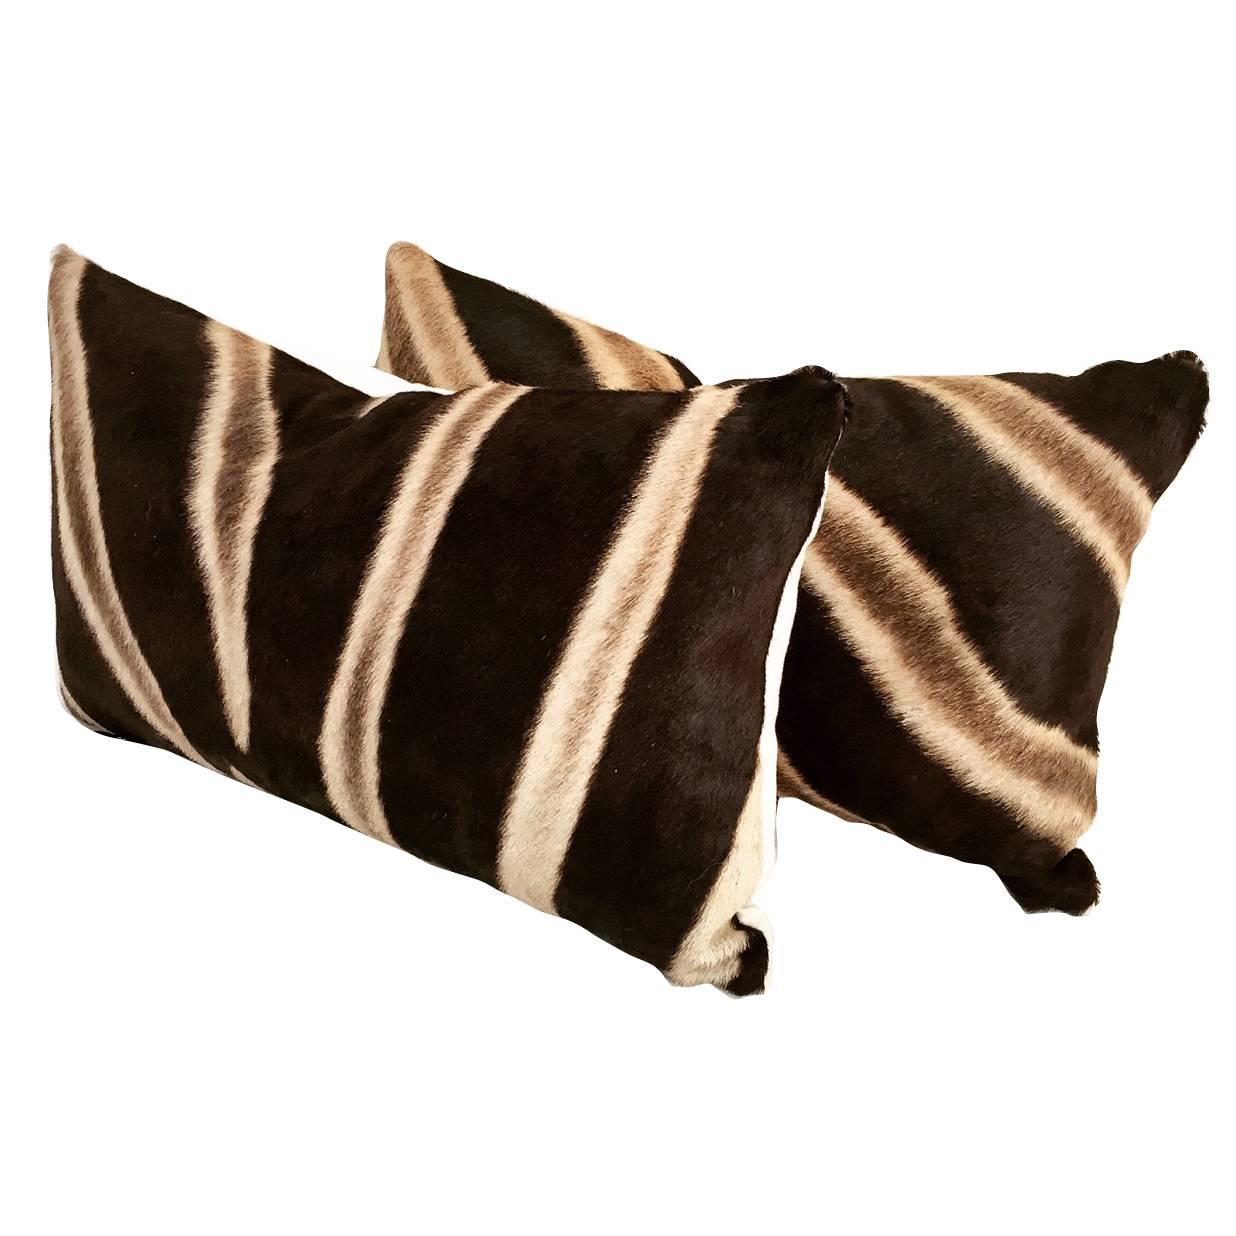 Zebra Hide Pillows, No. 96 and 97